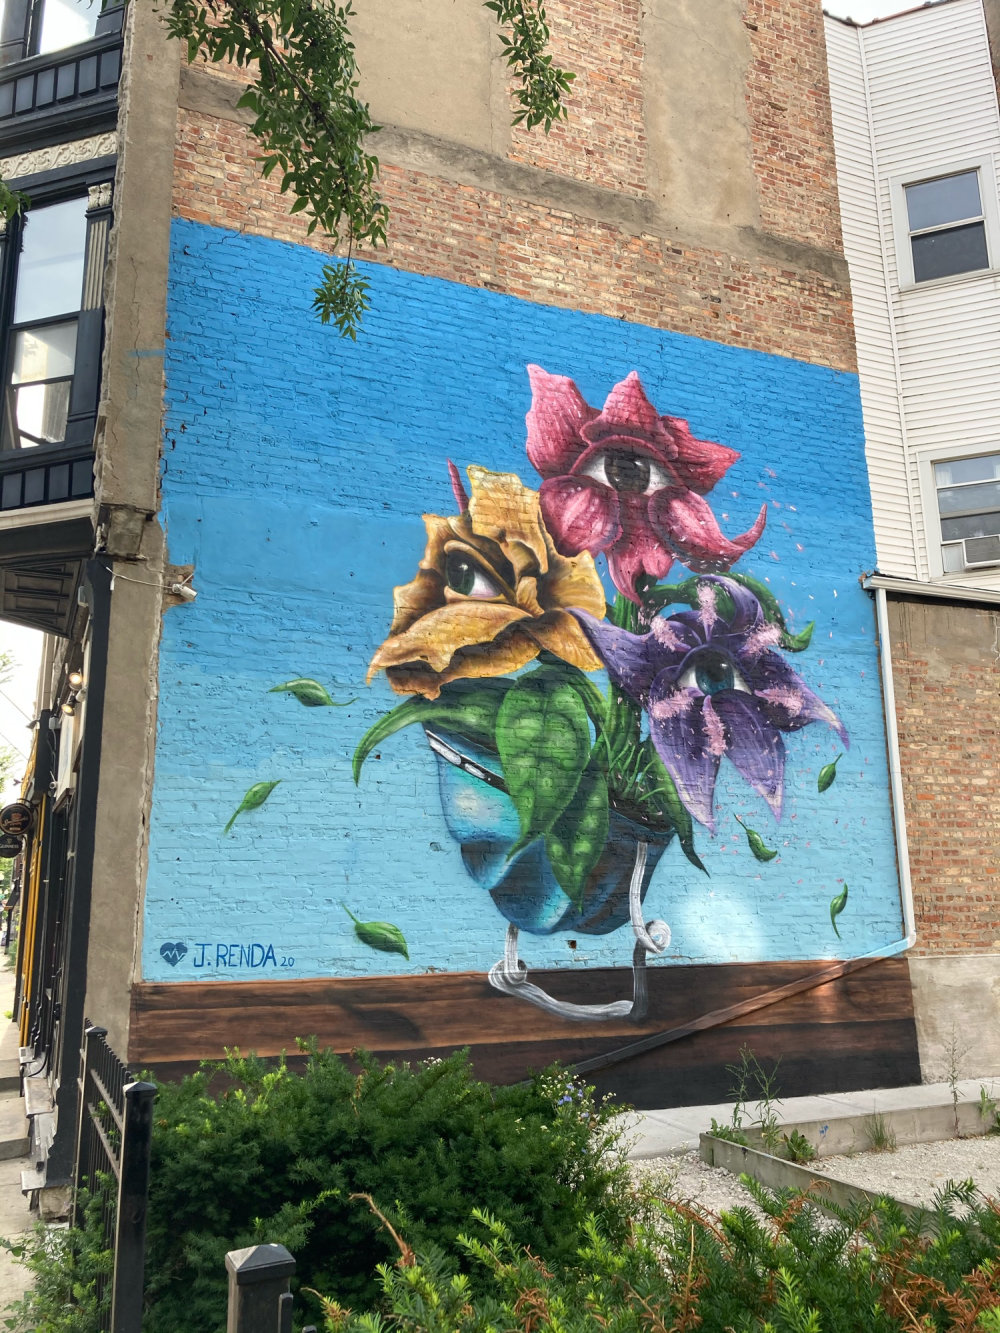 mural in Chicago by artist Joseph Renda Jr.